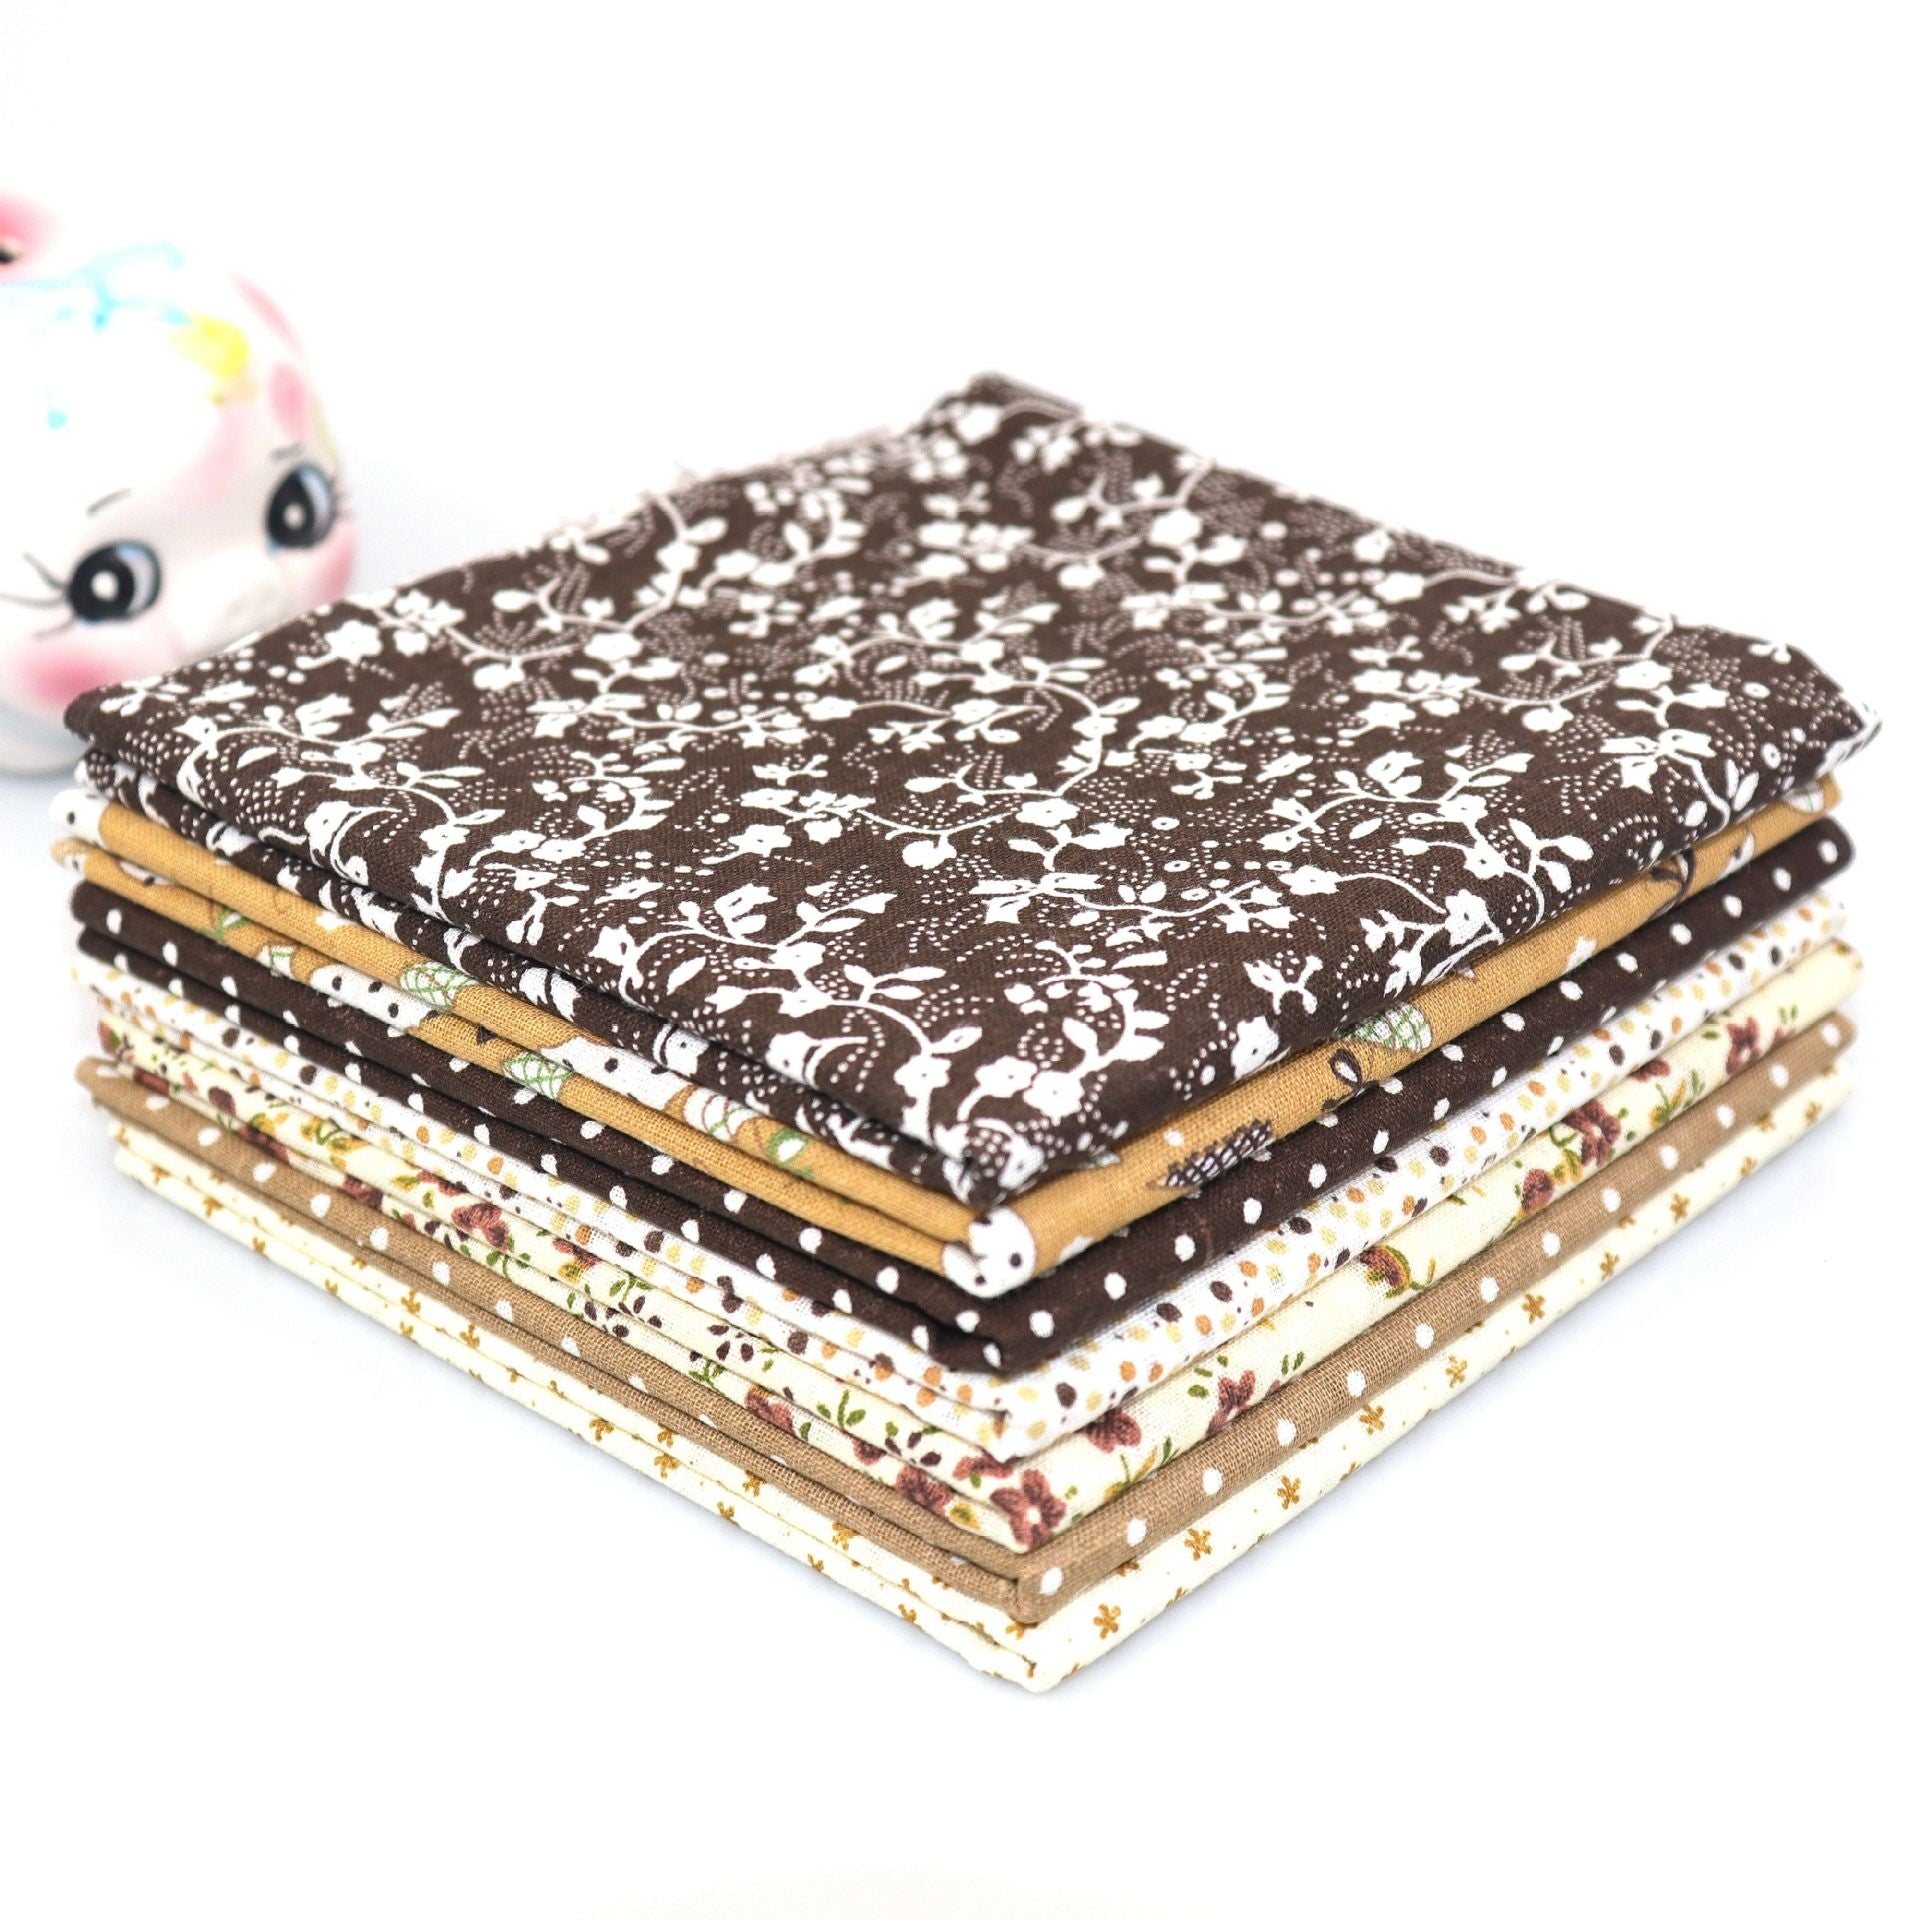 MajorCrafts 7pcs of 50cm x 50cm Mixed Brown Theme Cotton Fabric Patchwork Squares